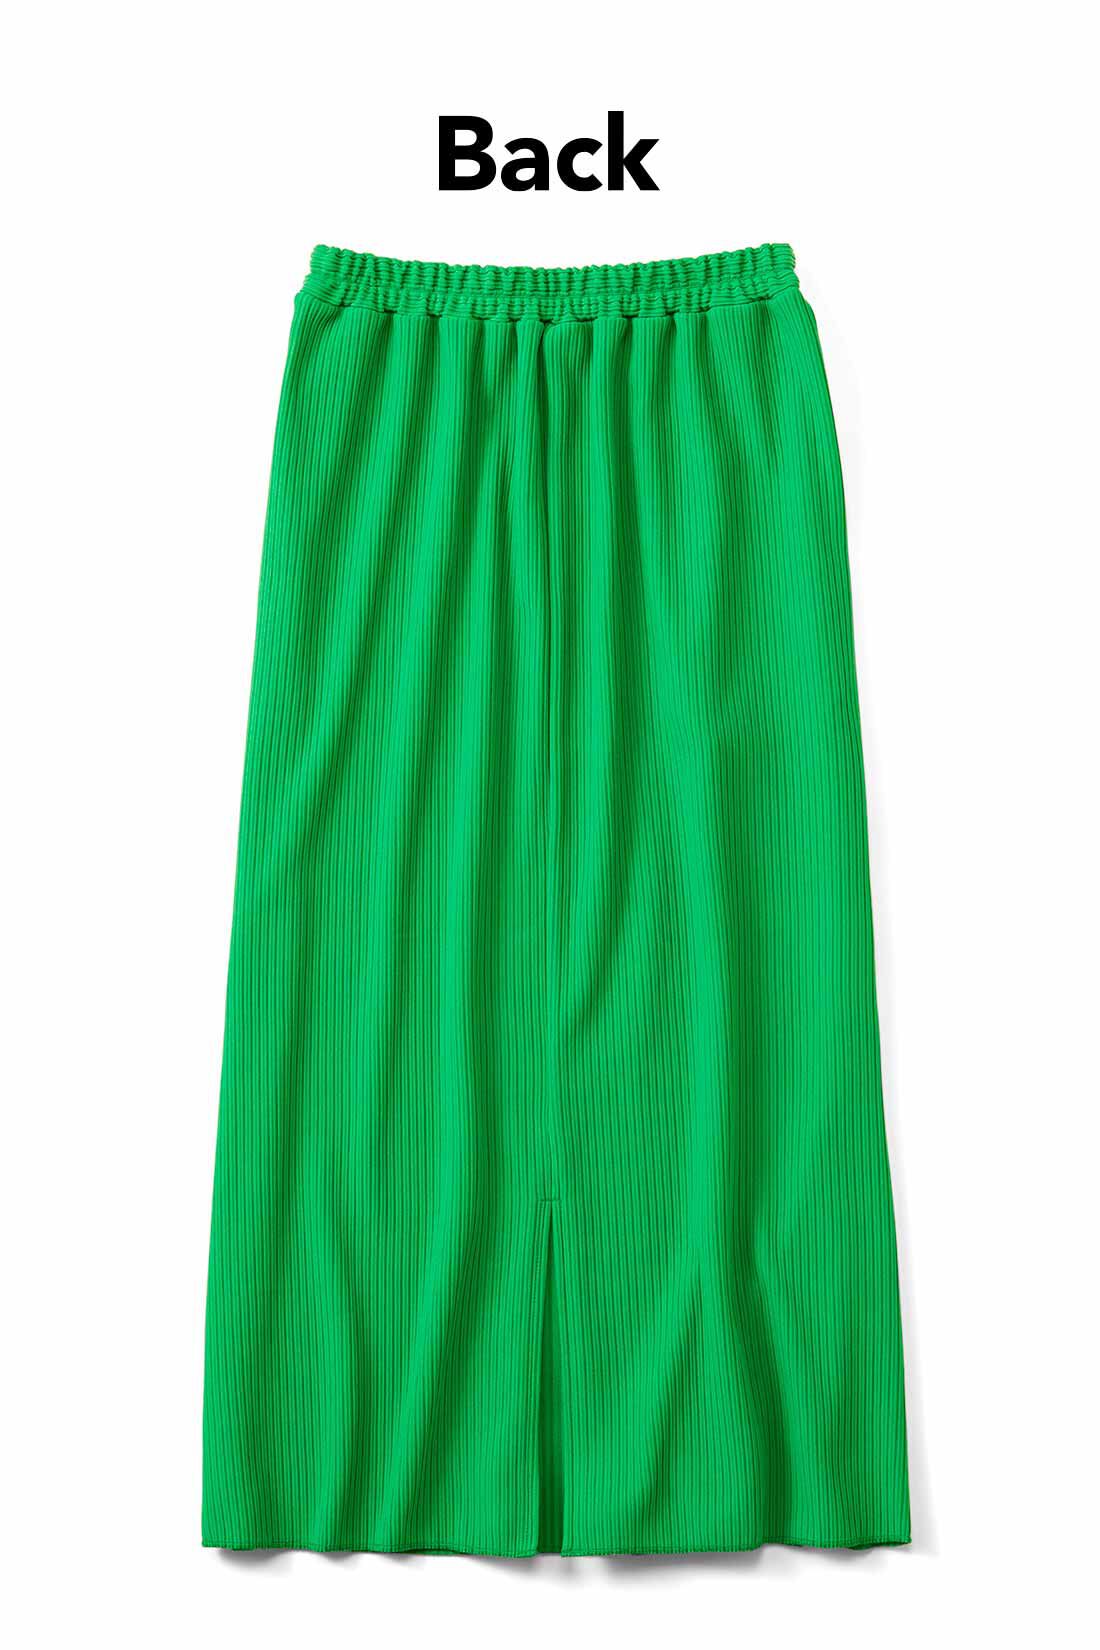 IEDIT|IEDIT[イディット]　ニットライクなリップルカットソー素材で仕立てた らくちんきれいなIラインスカート〈4〉|足さばきのいいスリット入り。お届けするカラーとは異なります。